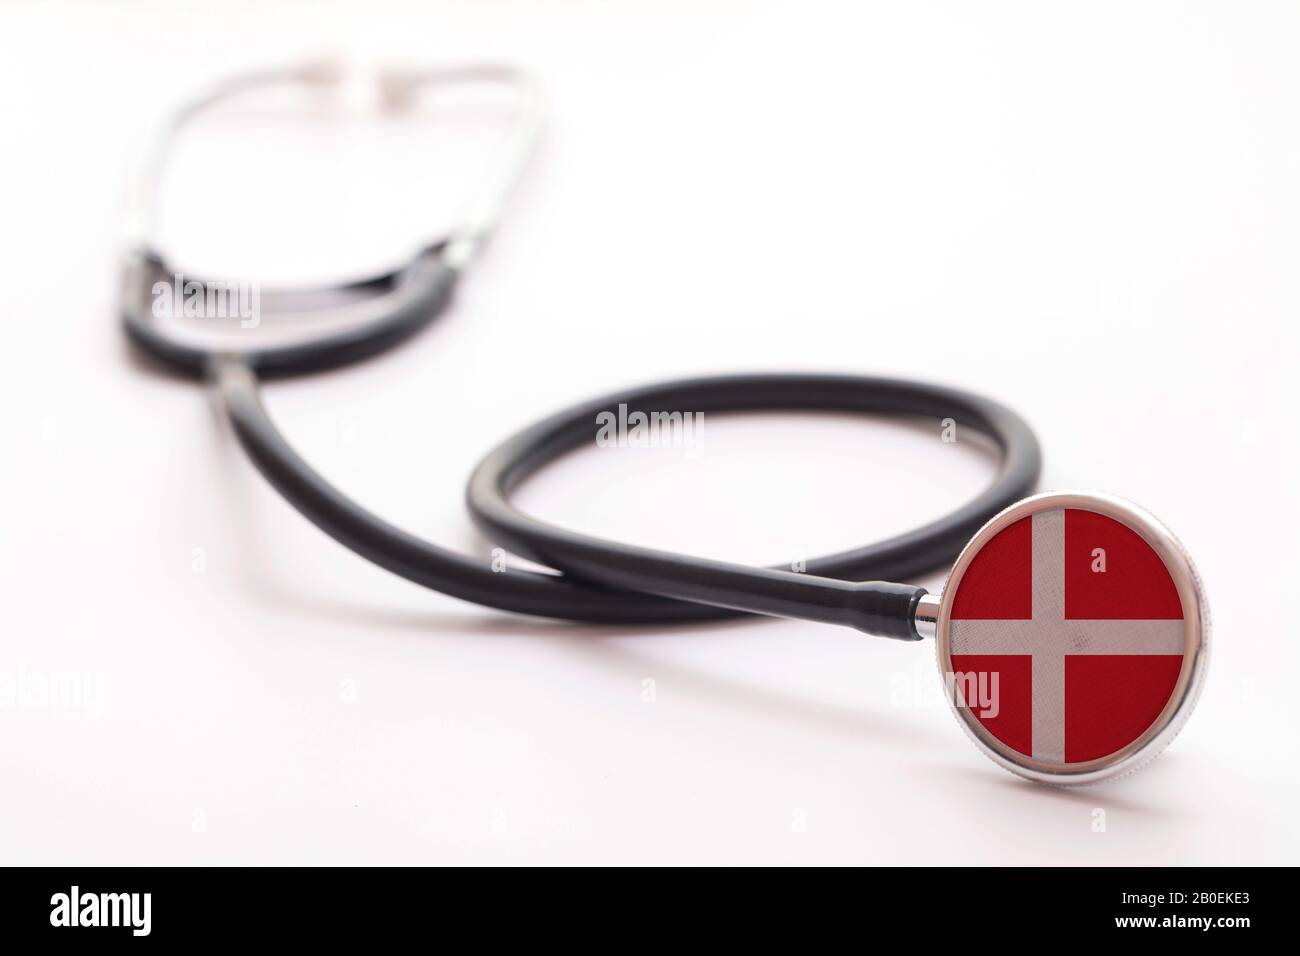 Danimarca sanitaria immagini e fotografie stock ad alta risoluzione - Alamy